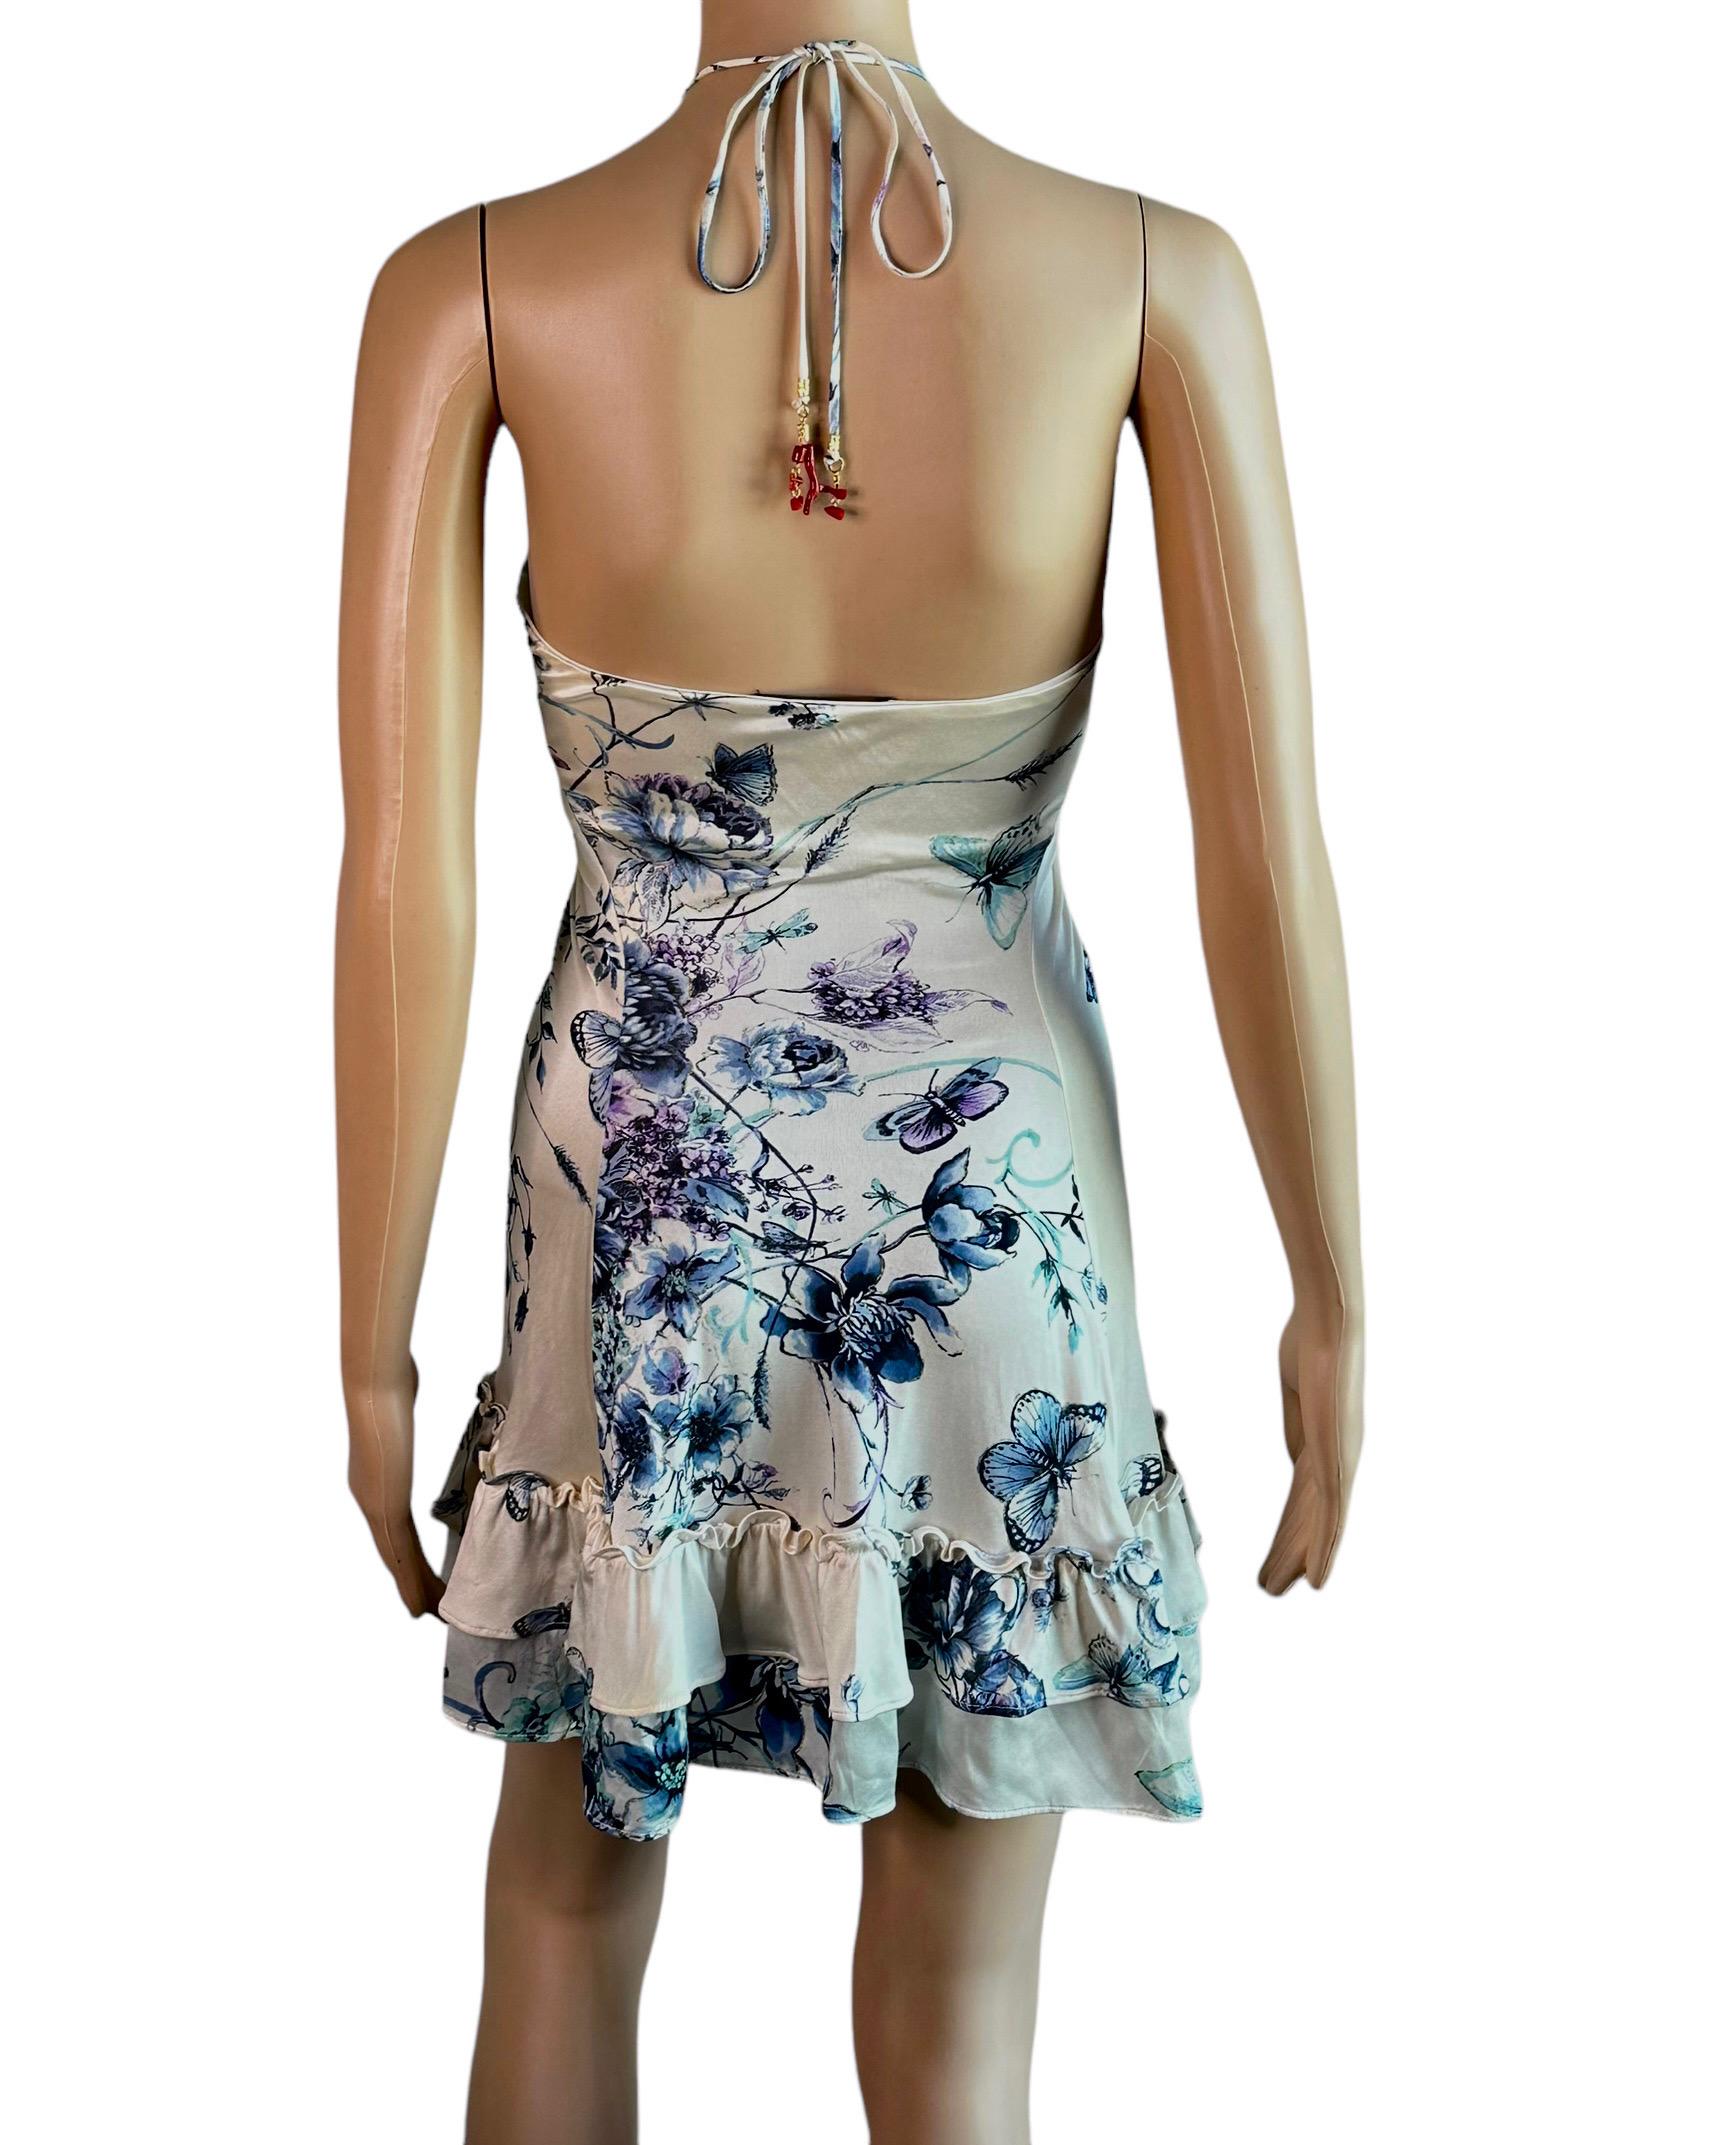  Roberto Cavalli S/S 2005 - Mini robe imprimée florale abstraite avec tatouage Pour femmes 